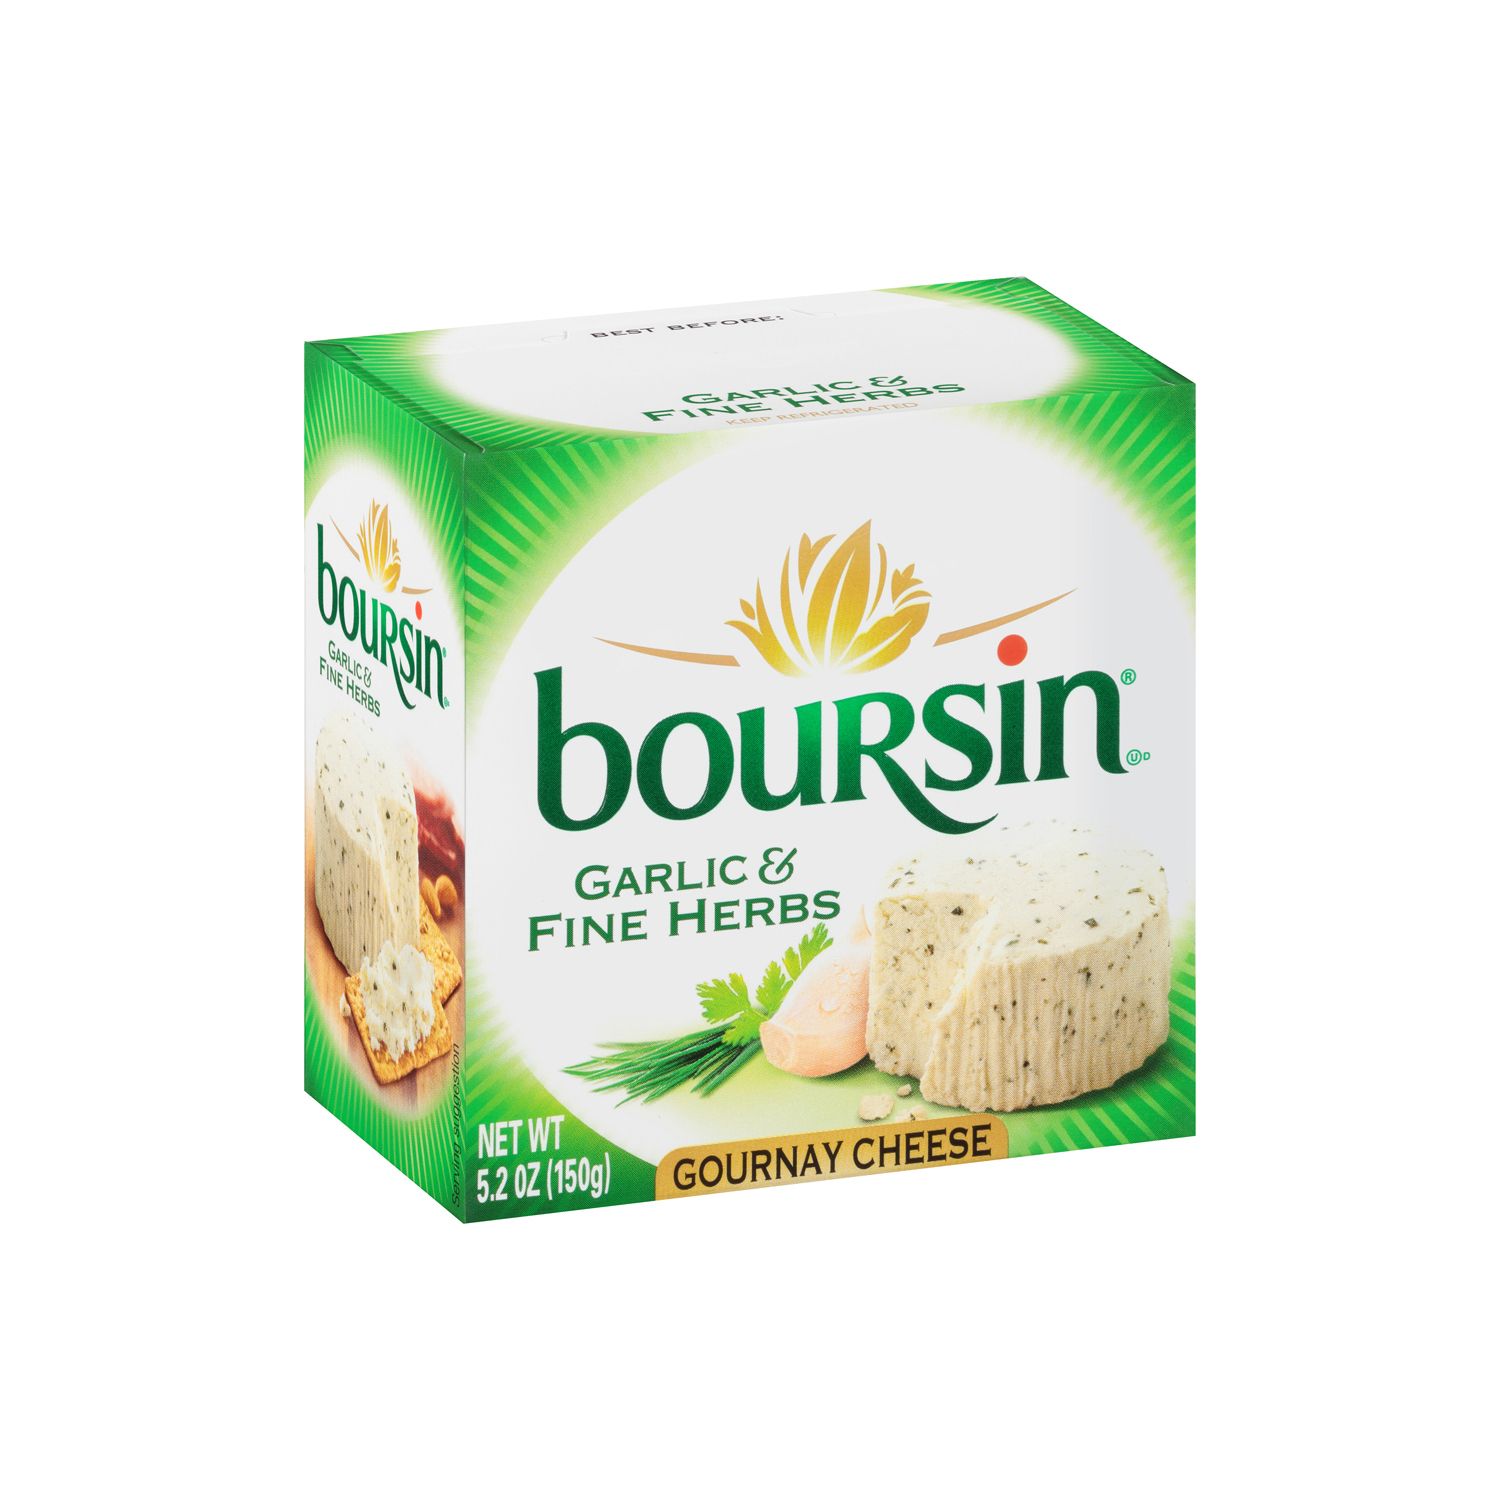 Boursin Garlic & Fine Herbs Gournay Cheese, 5.2 oz.